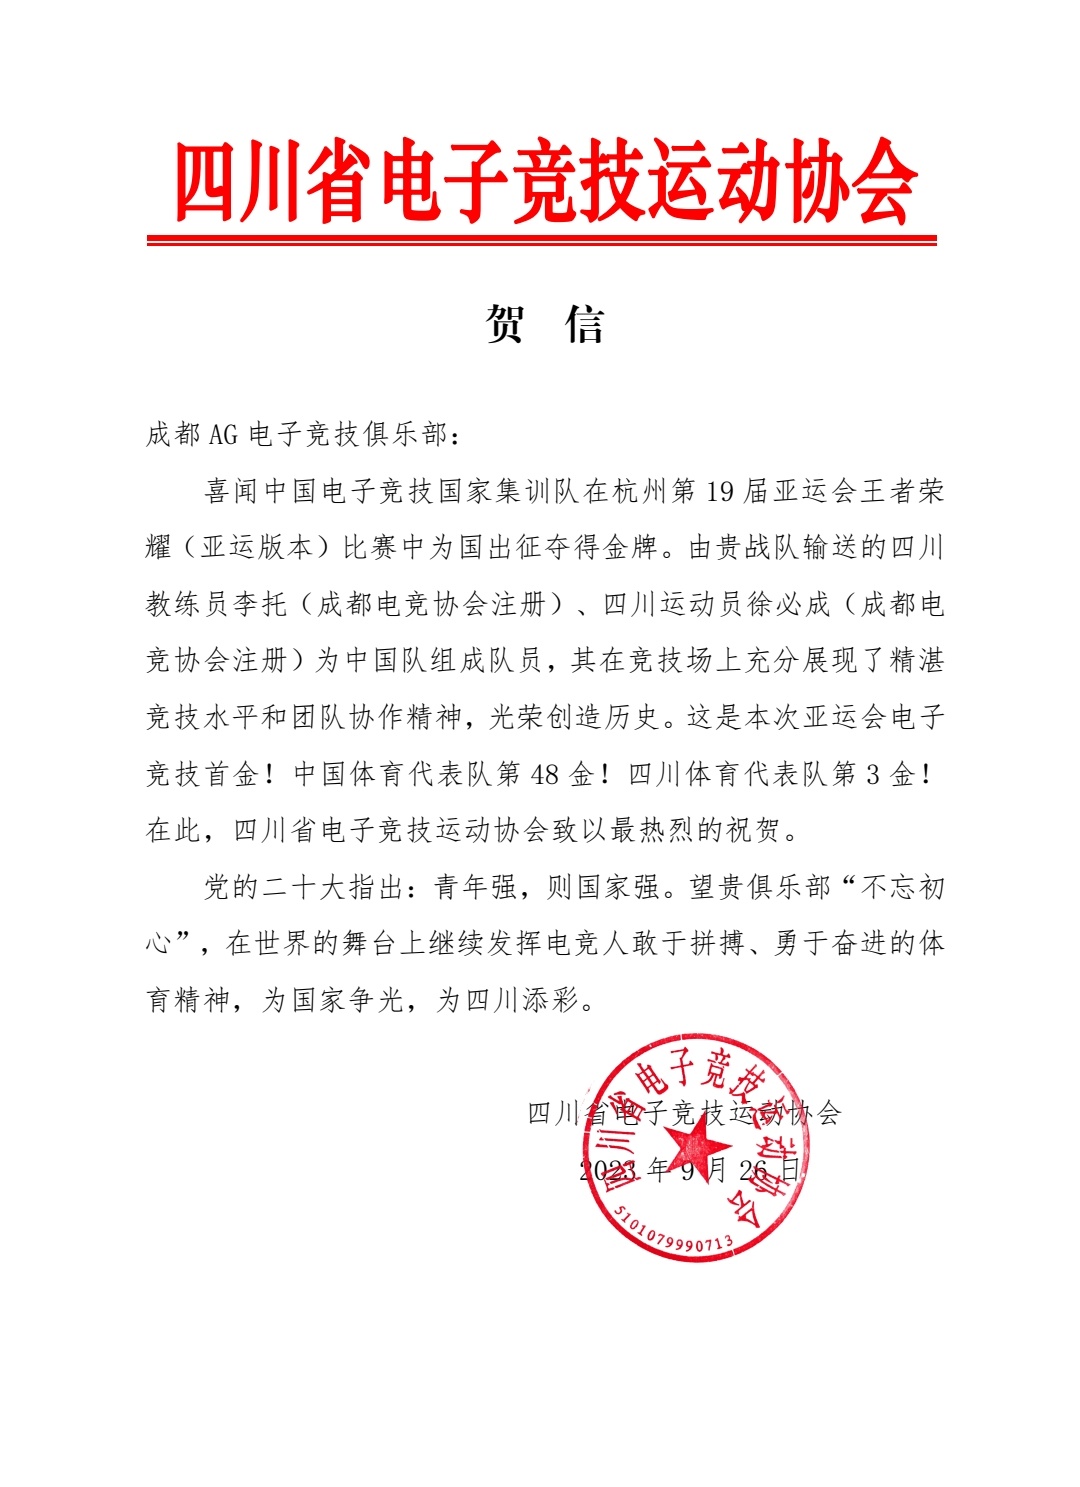 四川省体育局、成都市体育局向成都AG的王者荣耀国家队选手发去贺信